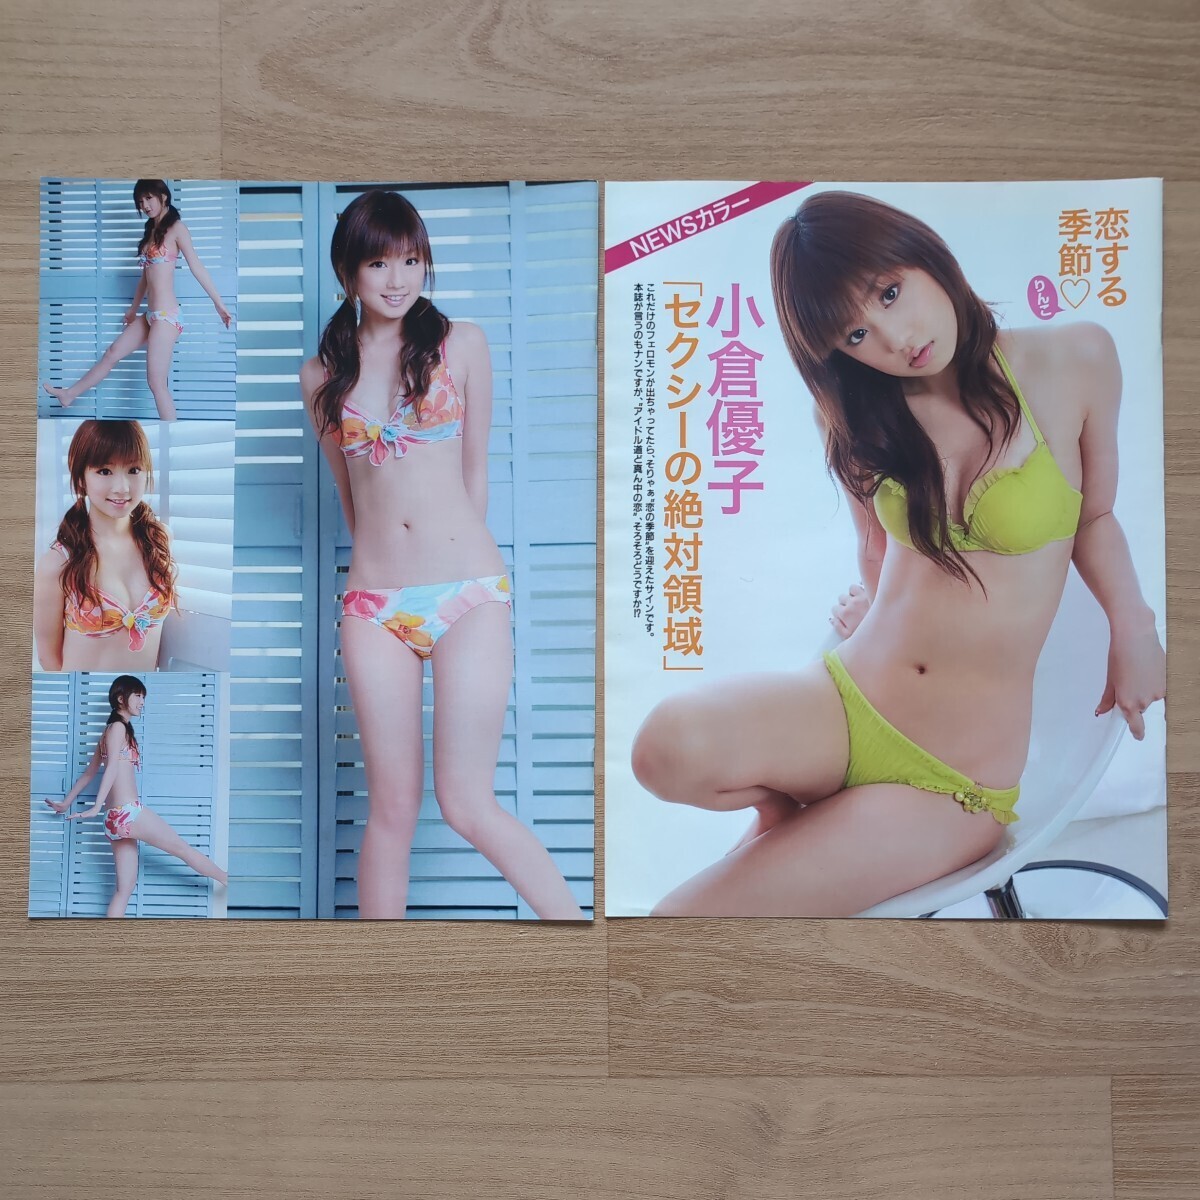  журнал. вырезки 27 страница Ogura Yuuko восток ......... восток ... юг Akira ..... еженедельный Play Boy FLASH?